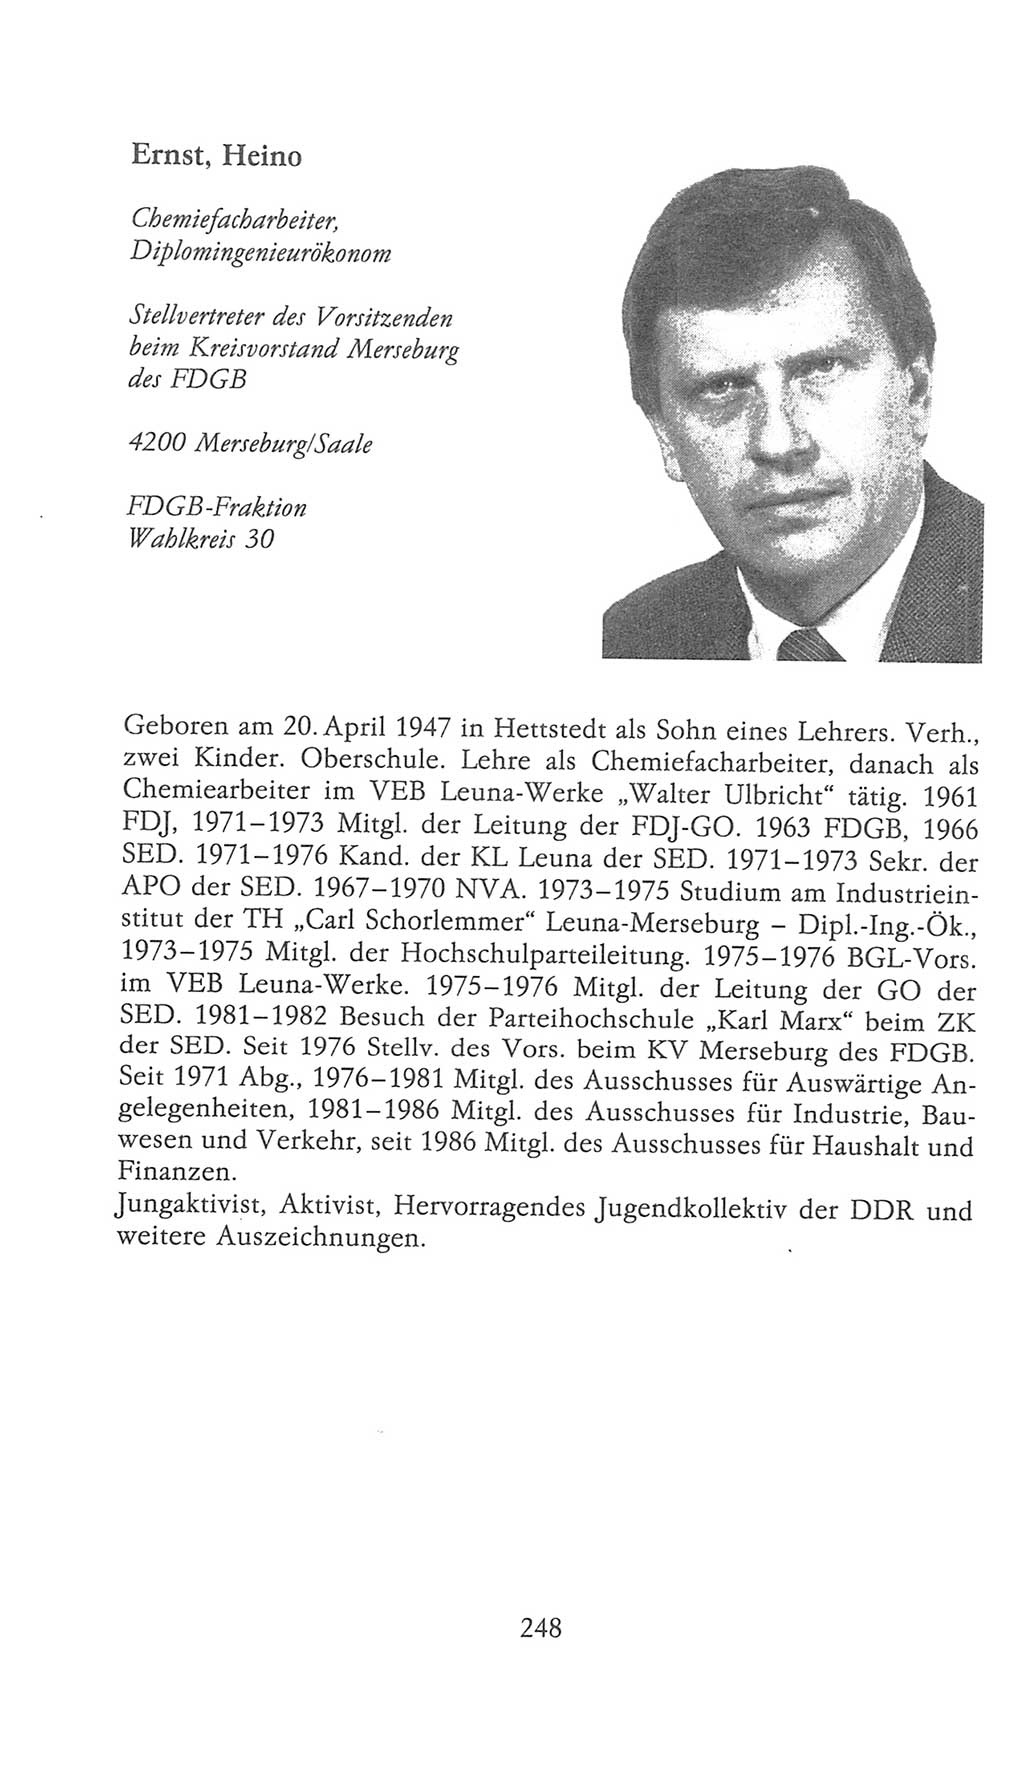 Volkskammer (VK) der Deutschen Demokratischen Republik (DDR), 9. Wahlperiode 1986-1990, Seite 248 (VK. DDR 9. WP. 1986-1990, S. 248)